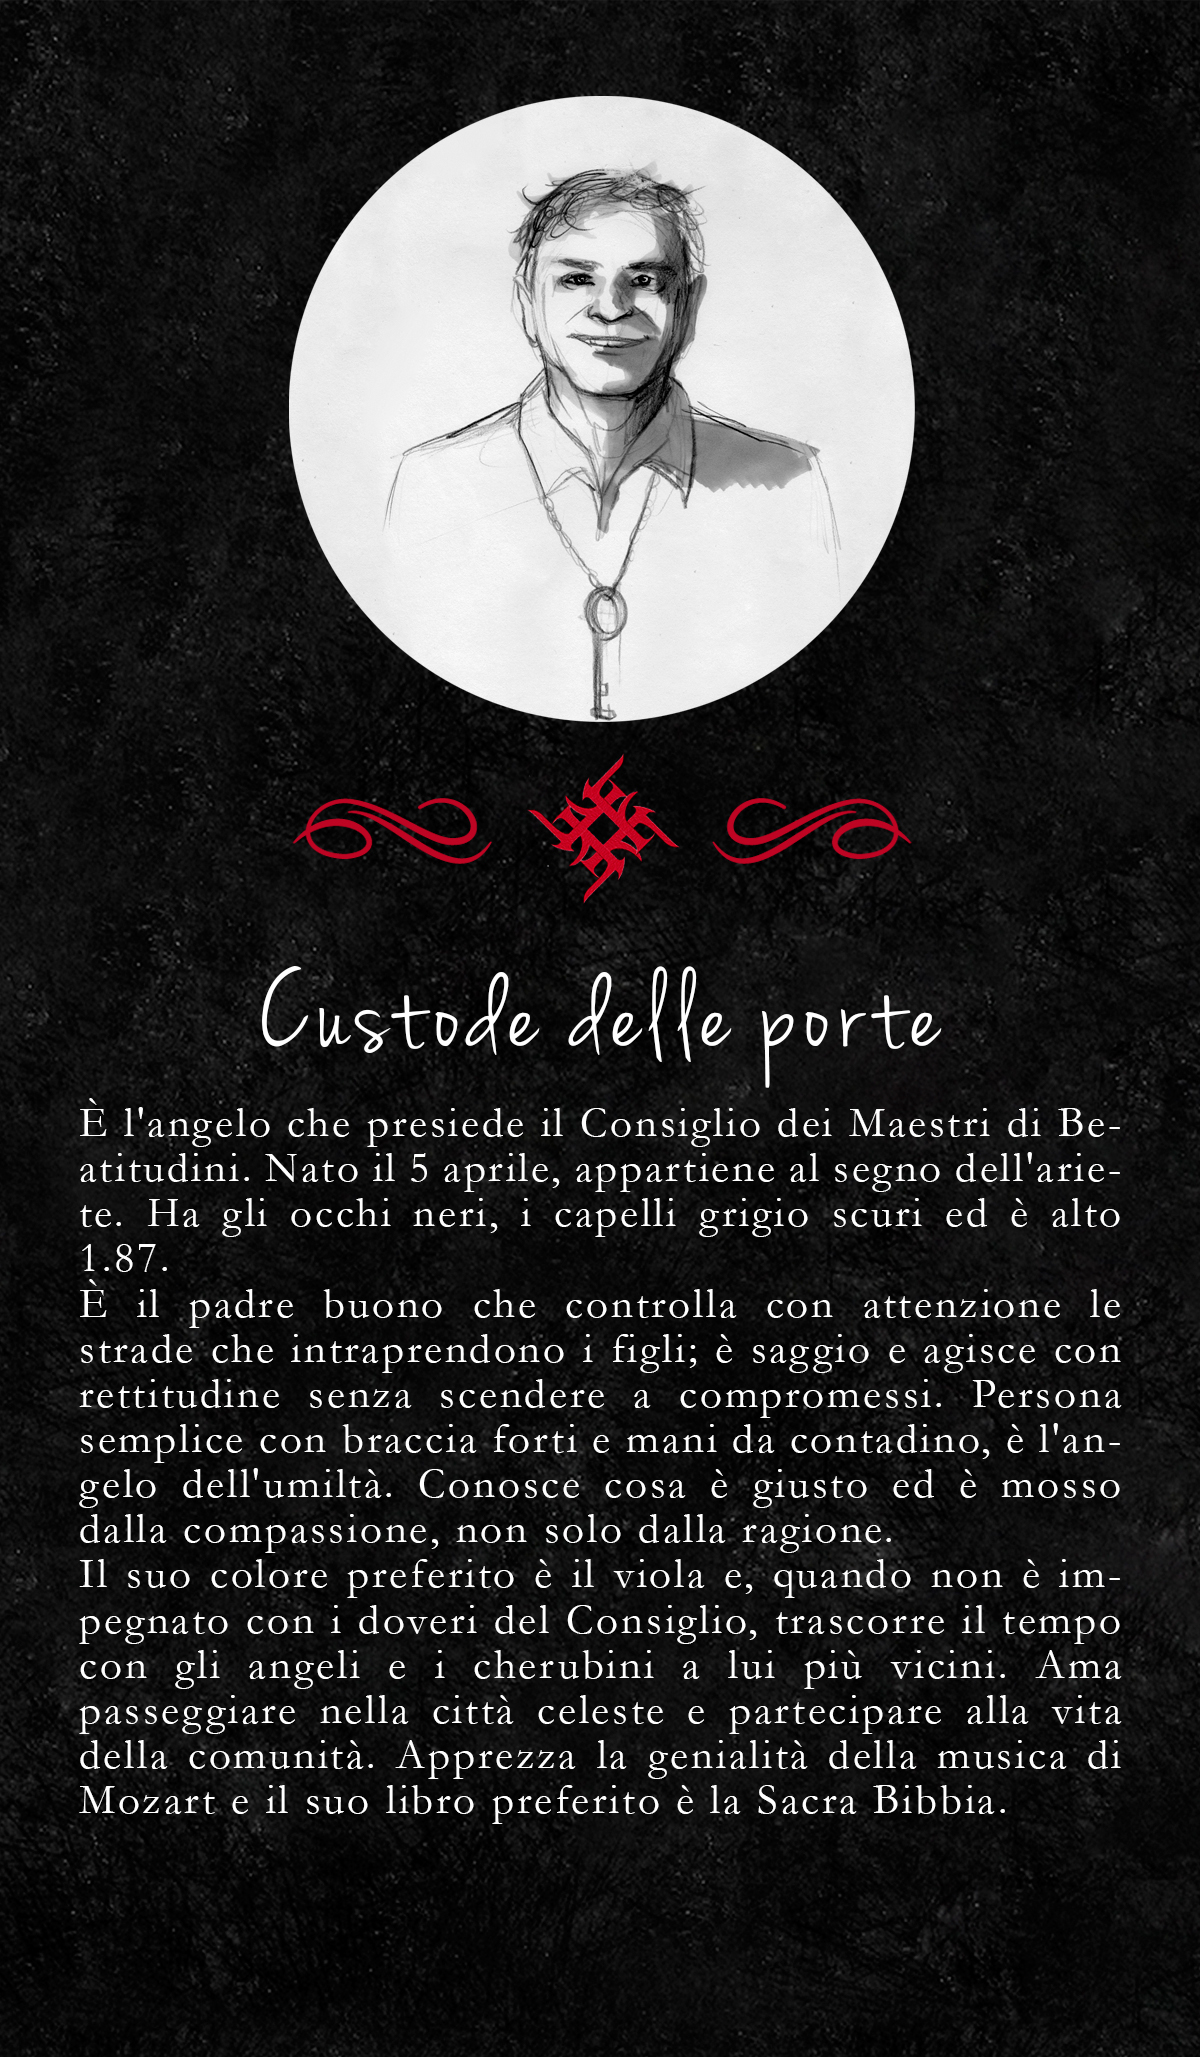 10-11-2014_Emilio Alessandro Manzotti_romanzo FRECCIA_Custode delle Porte